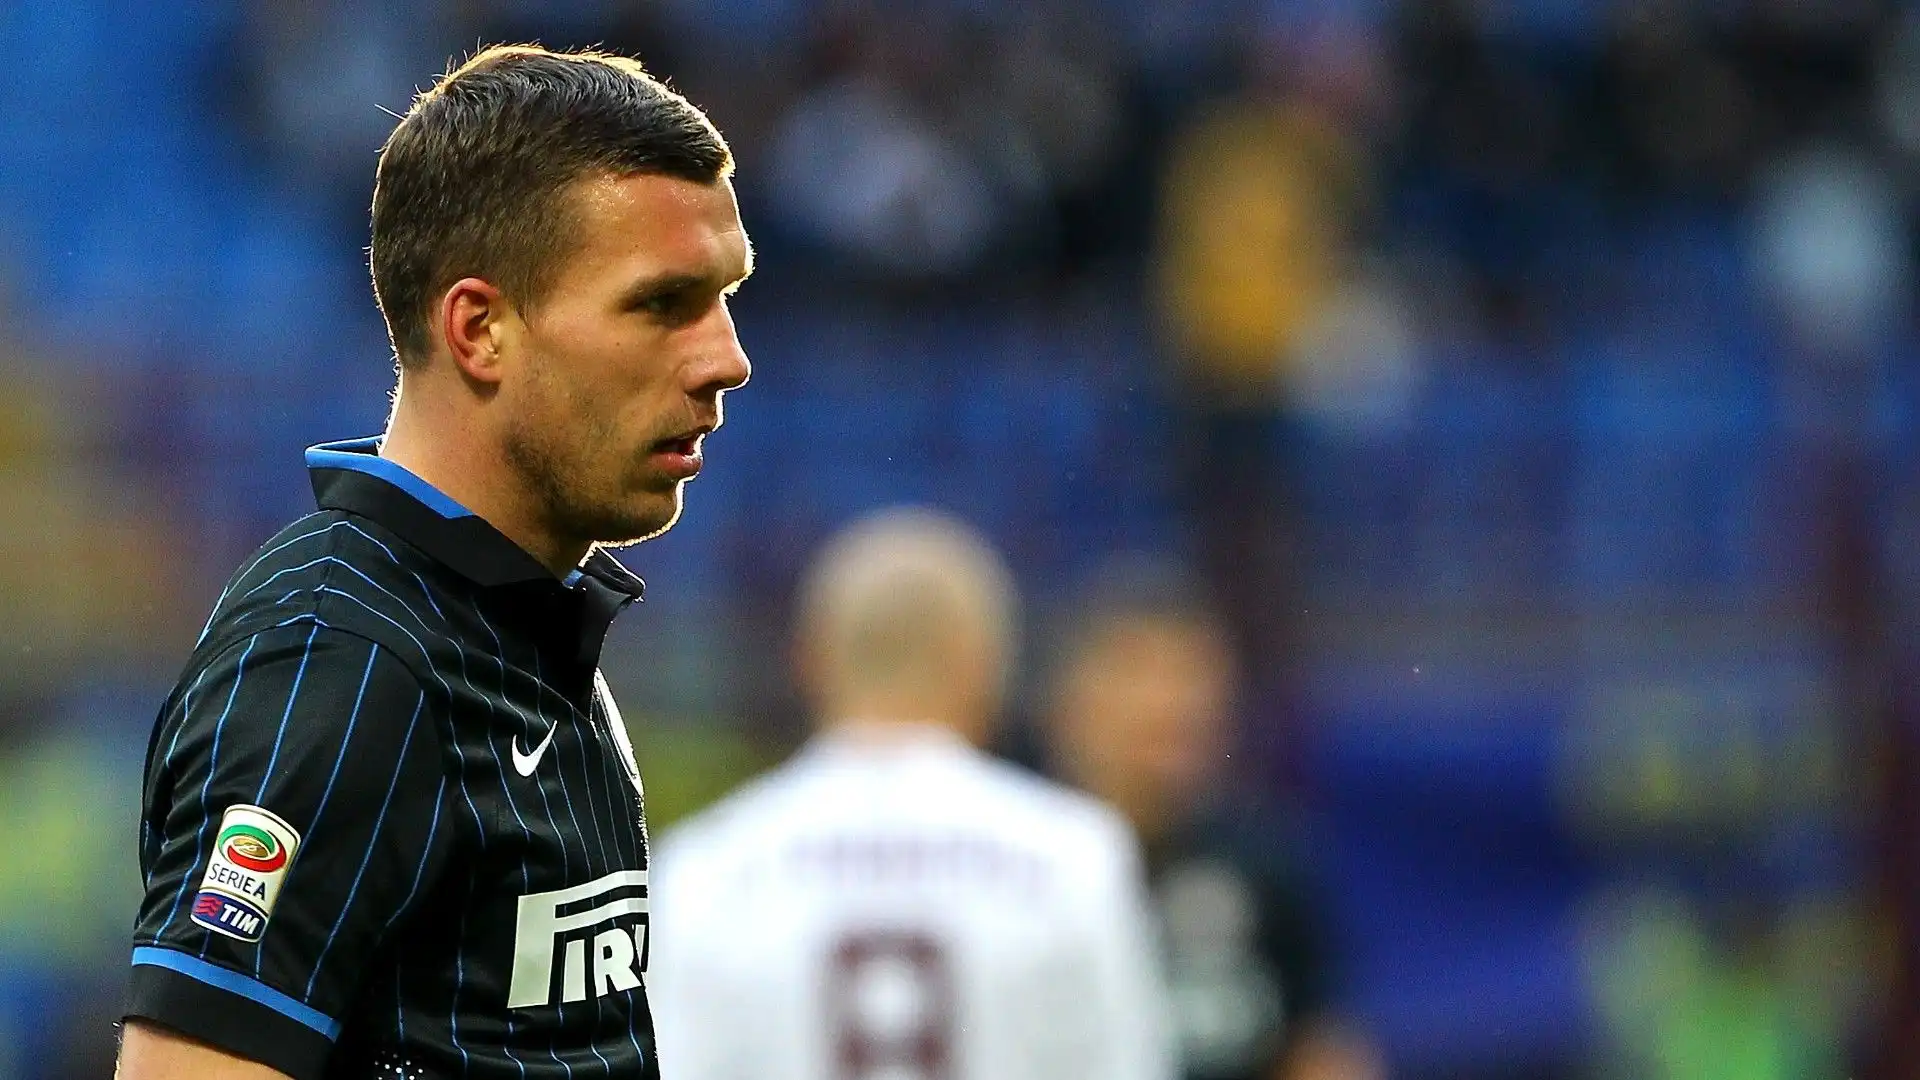 L'esperienza all'Inter non è stata fortunata ma Podolski rimarrà comunque nella storia del calcio